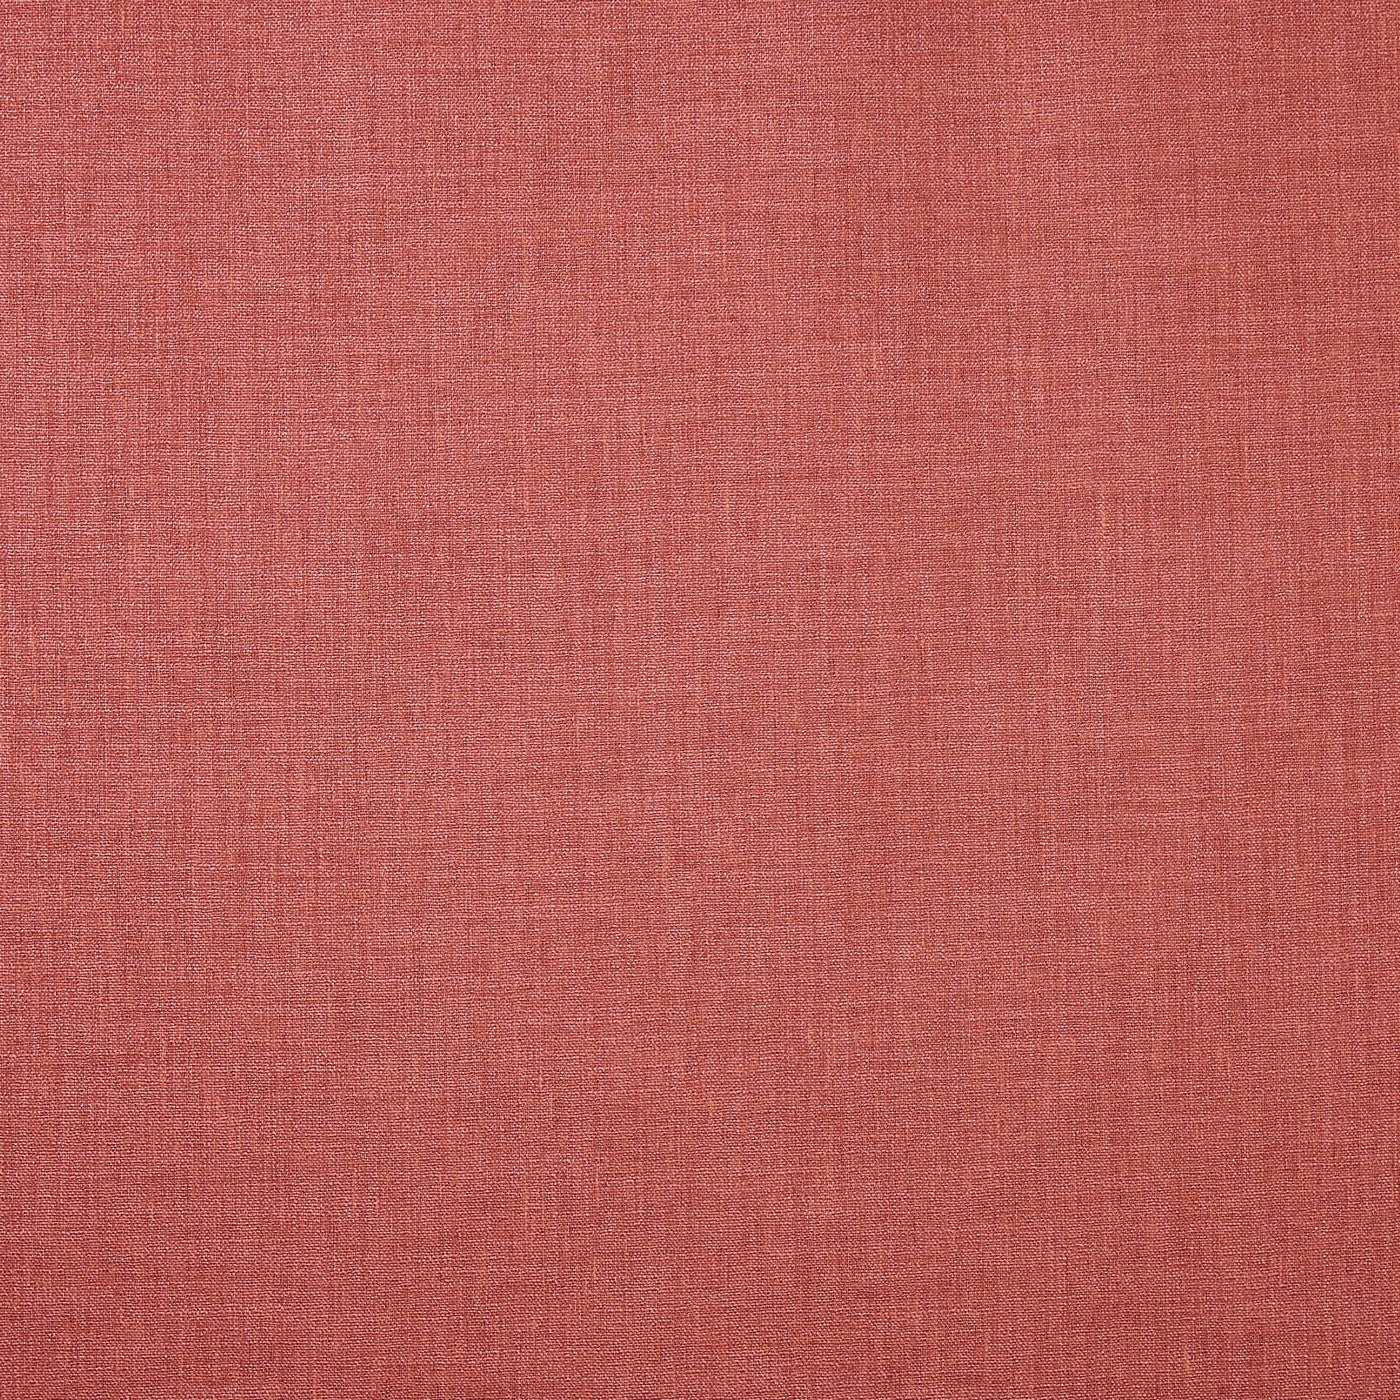 Prestigious Textiles Saxon Fabric Rouge